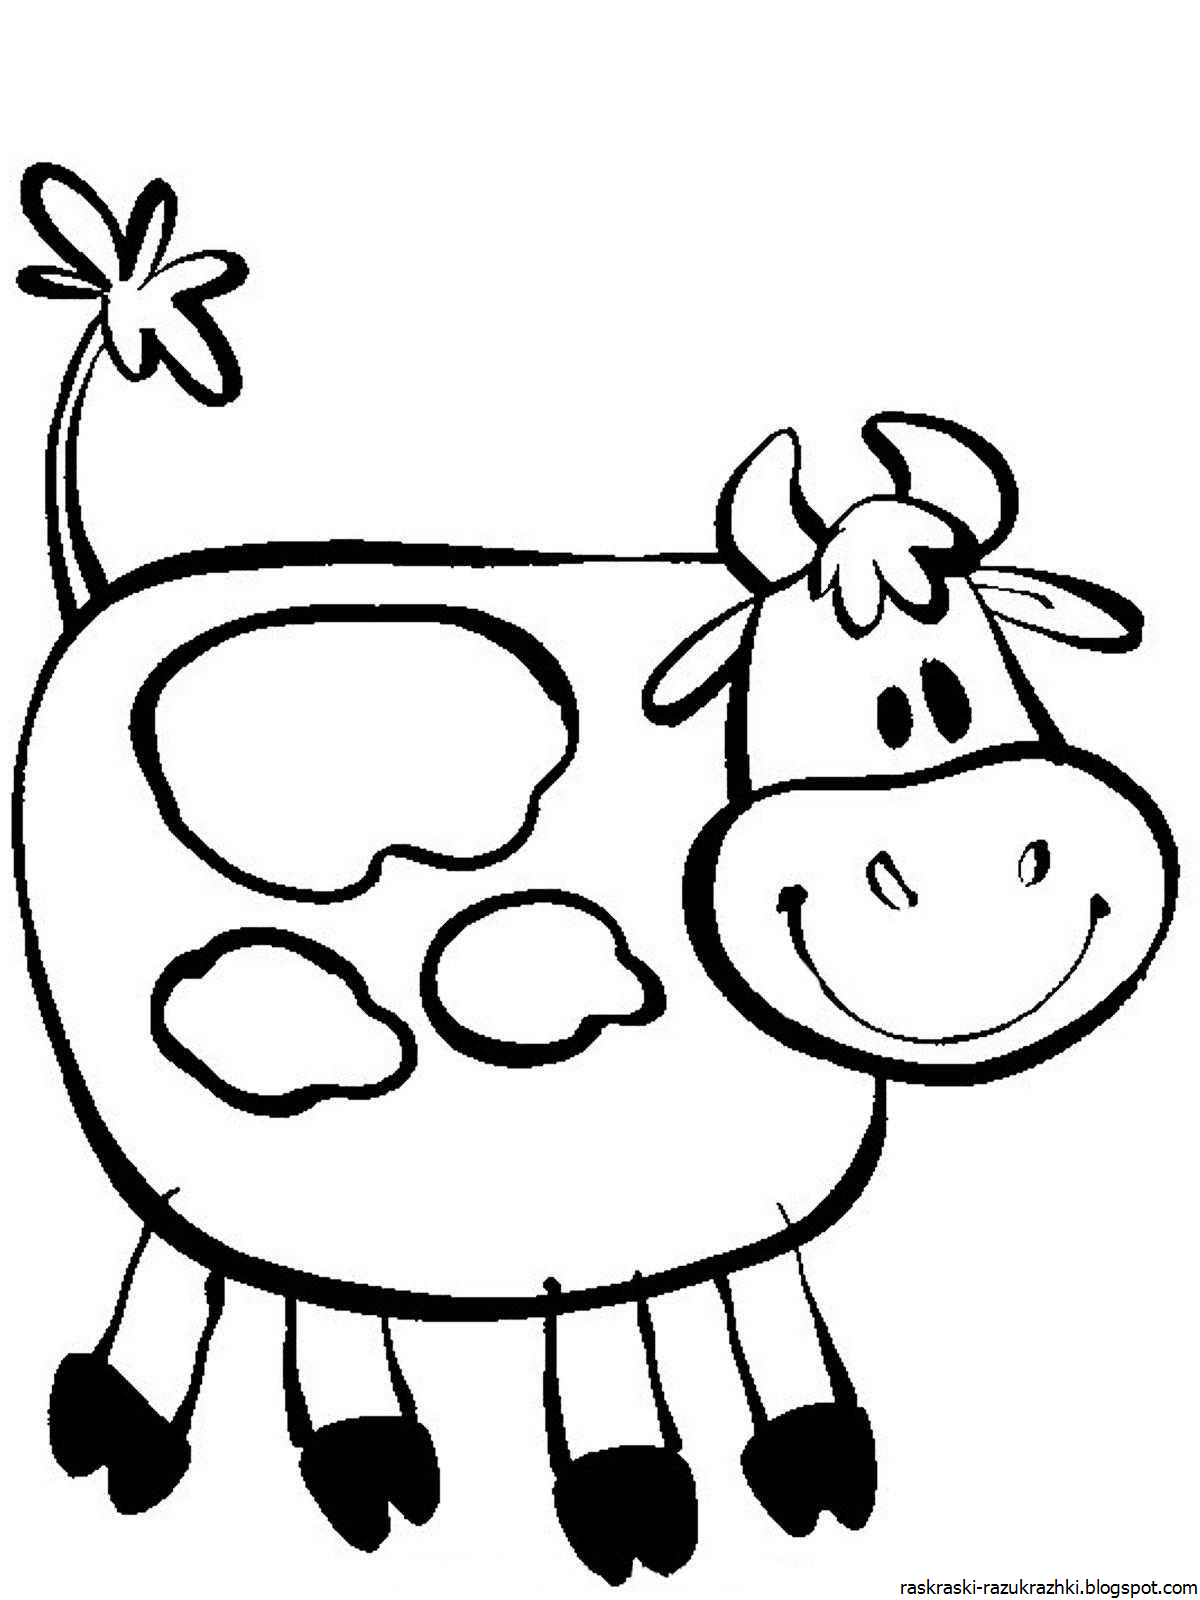 Распечатать коровку раскраску. Раскраска корова. Корова раскраска для детей. Корова раскраска для малышей. Коровка раскраска для детей.